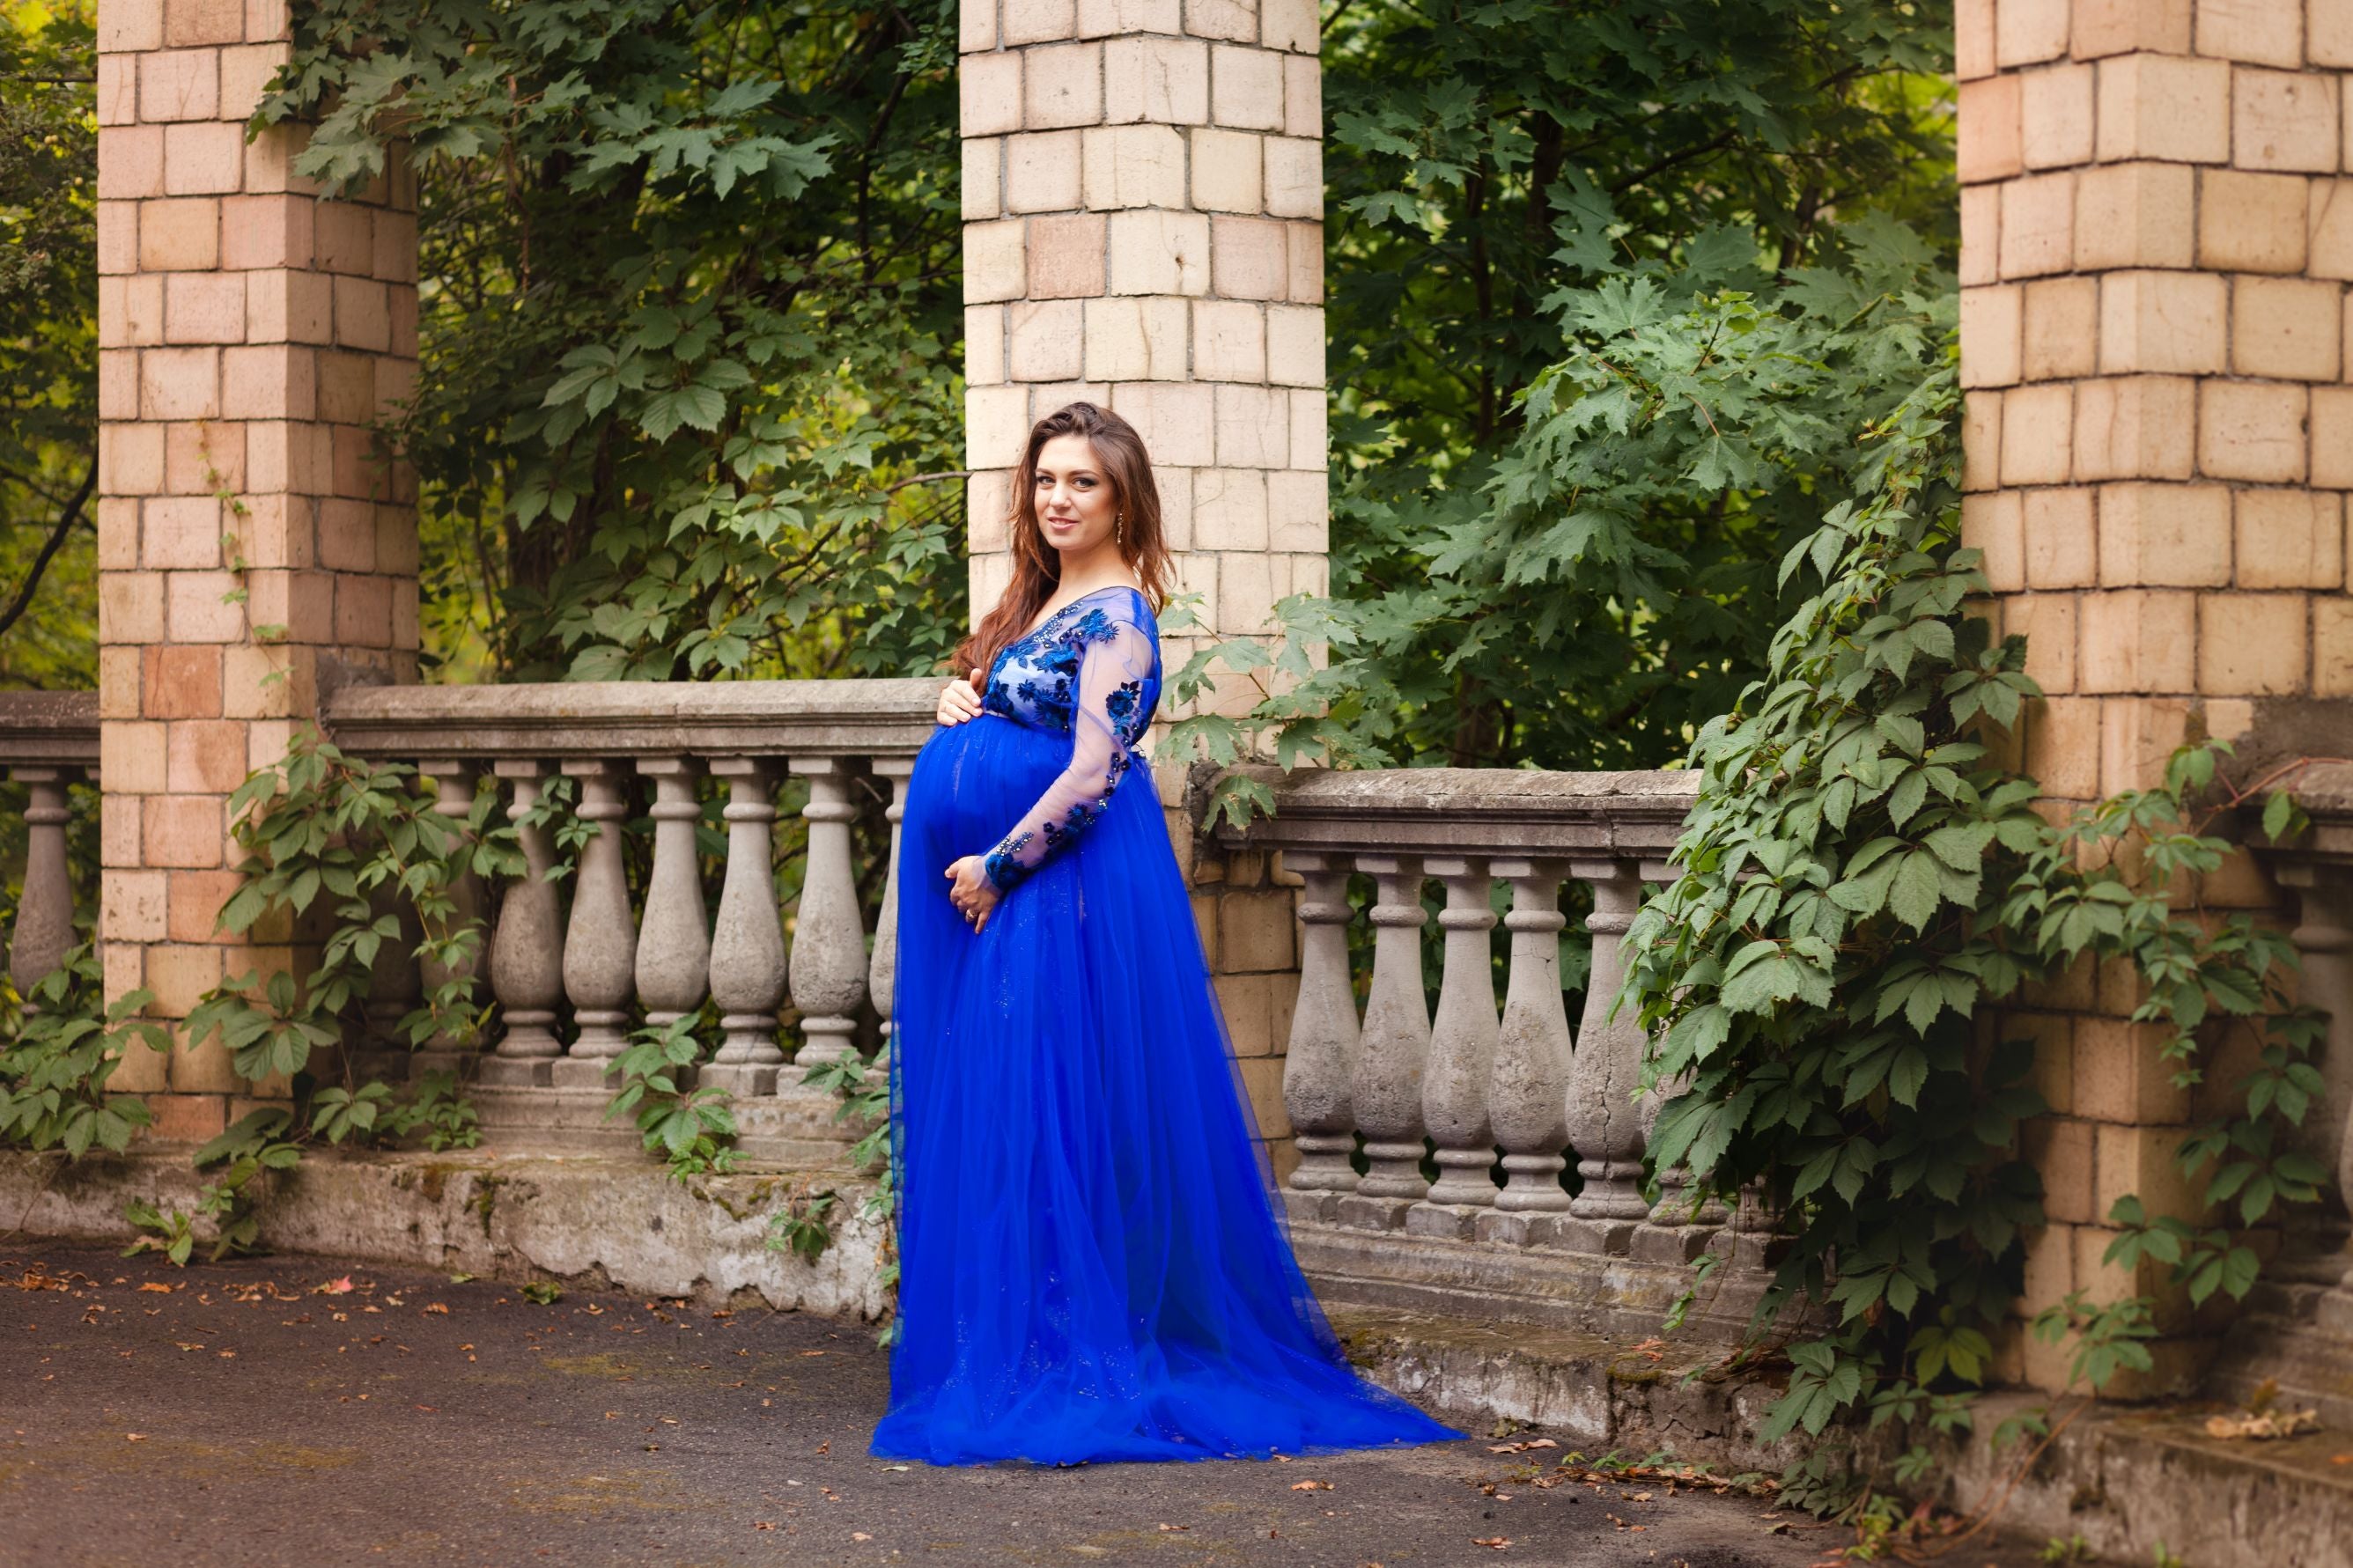 Grūtnieču buduāra kleita ''Bella'' tumši zilā krāsā